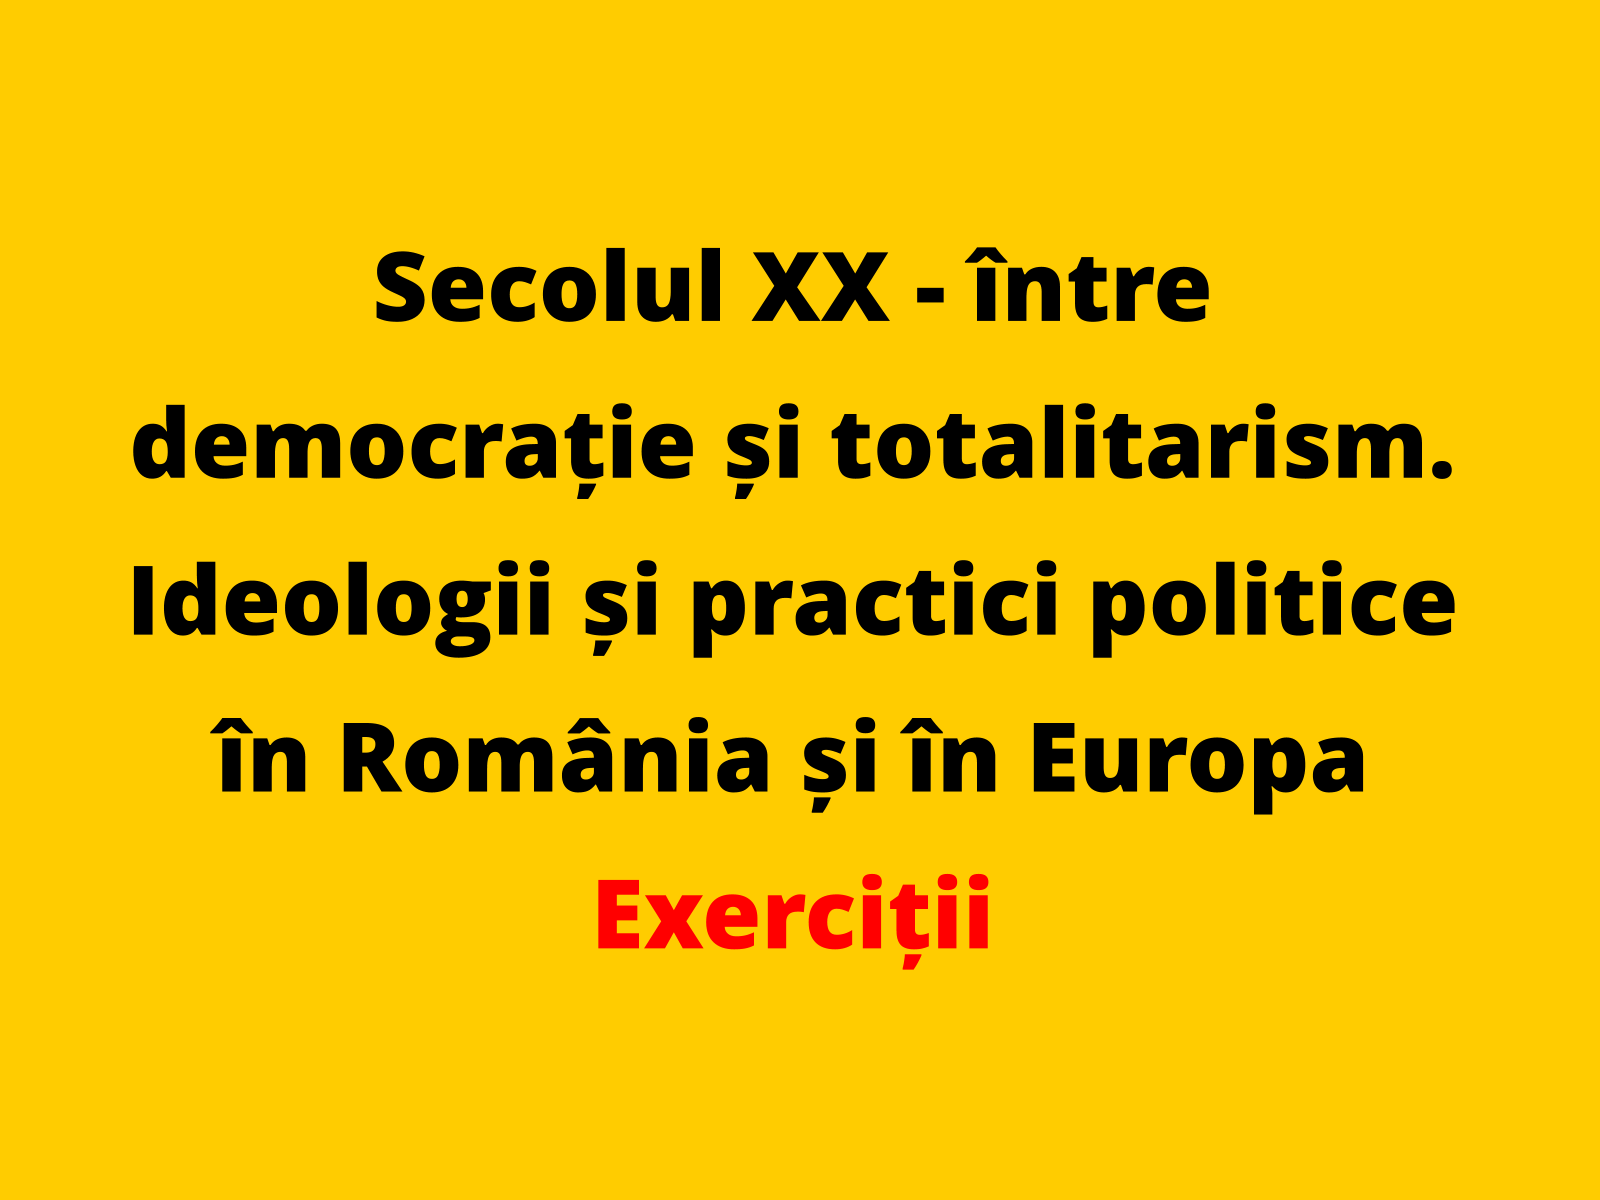 Menționați o asemănare între practicile politice utilizate în România, în ultimul deceniu al secolului al XX-lea